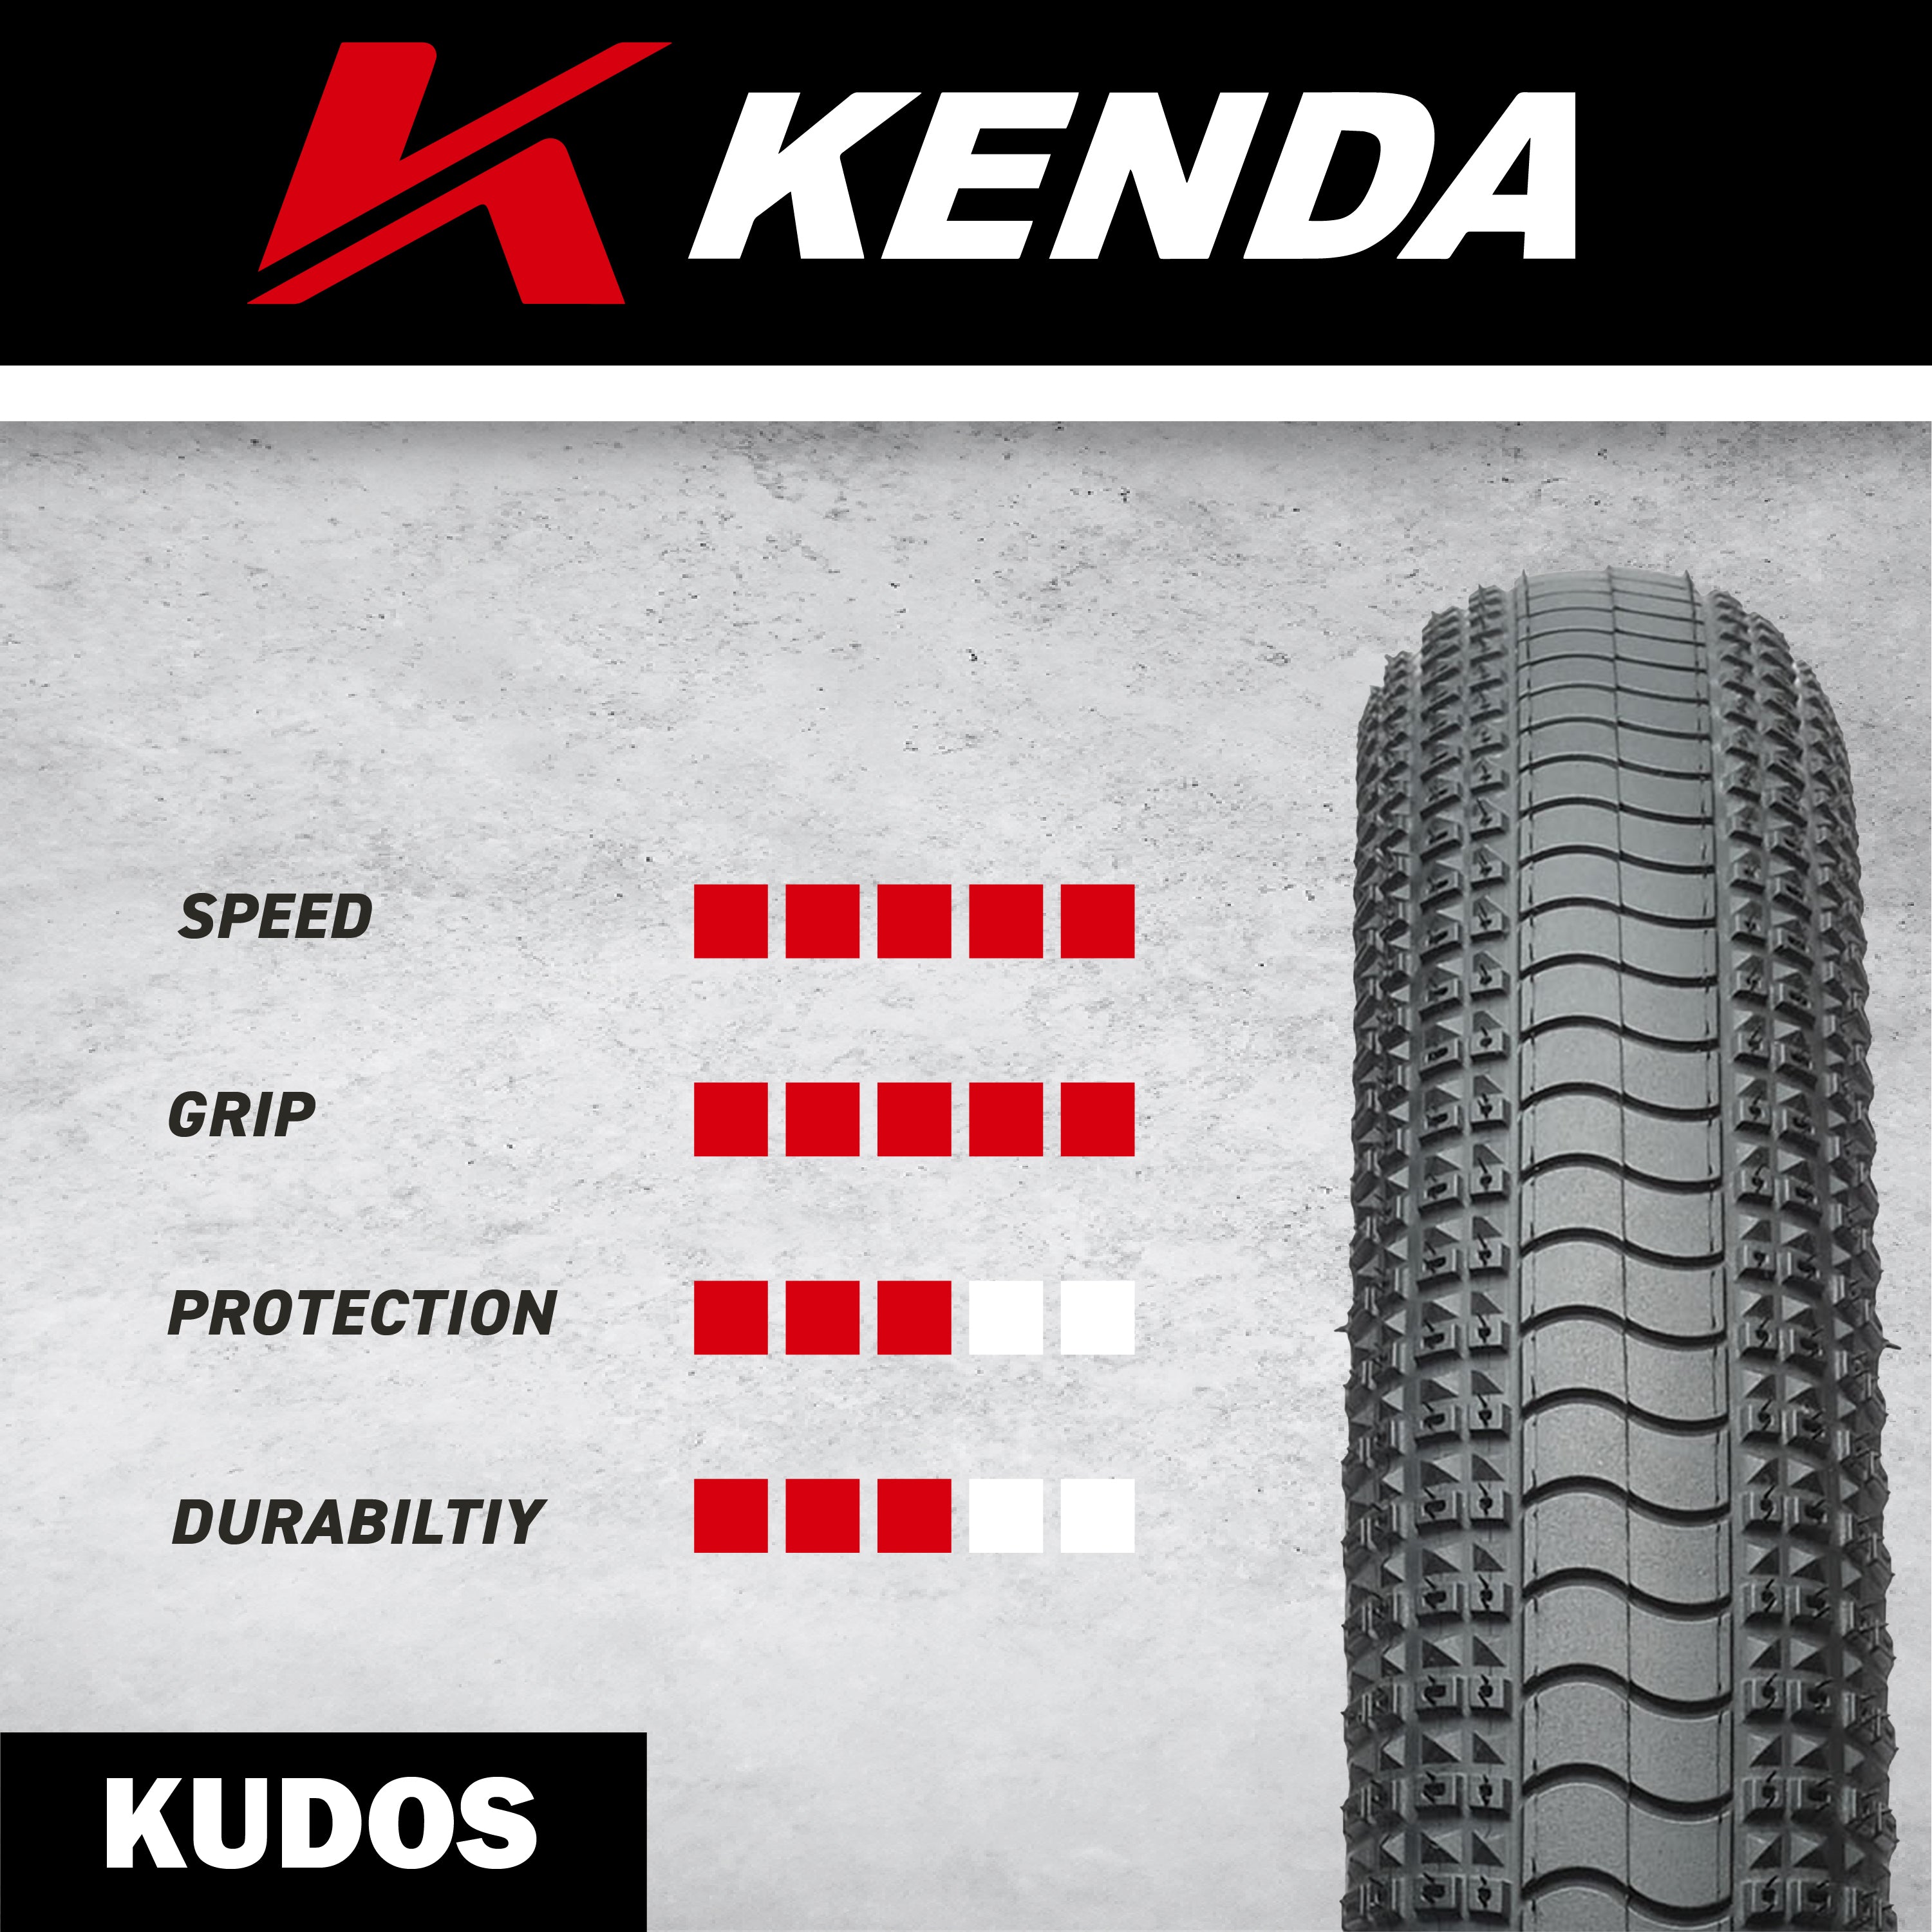 Kenda Kudos Pro 120tpi Fold 20x1.95 BMX Bicycle Tire w/ Bottle Opener (Single)